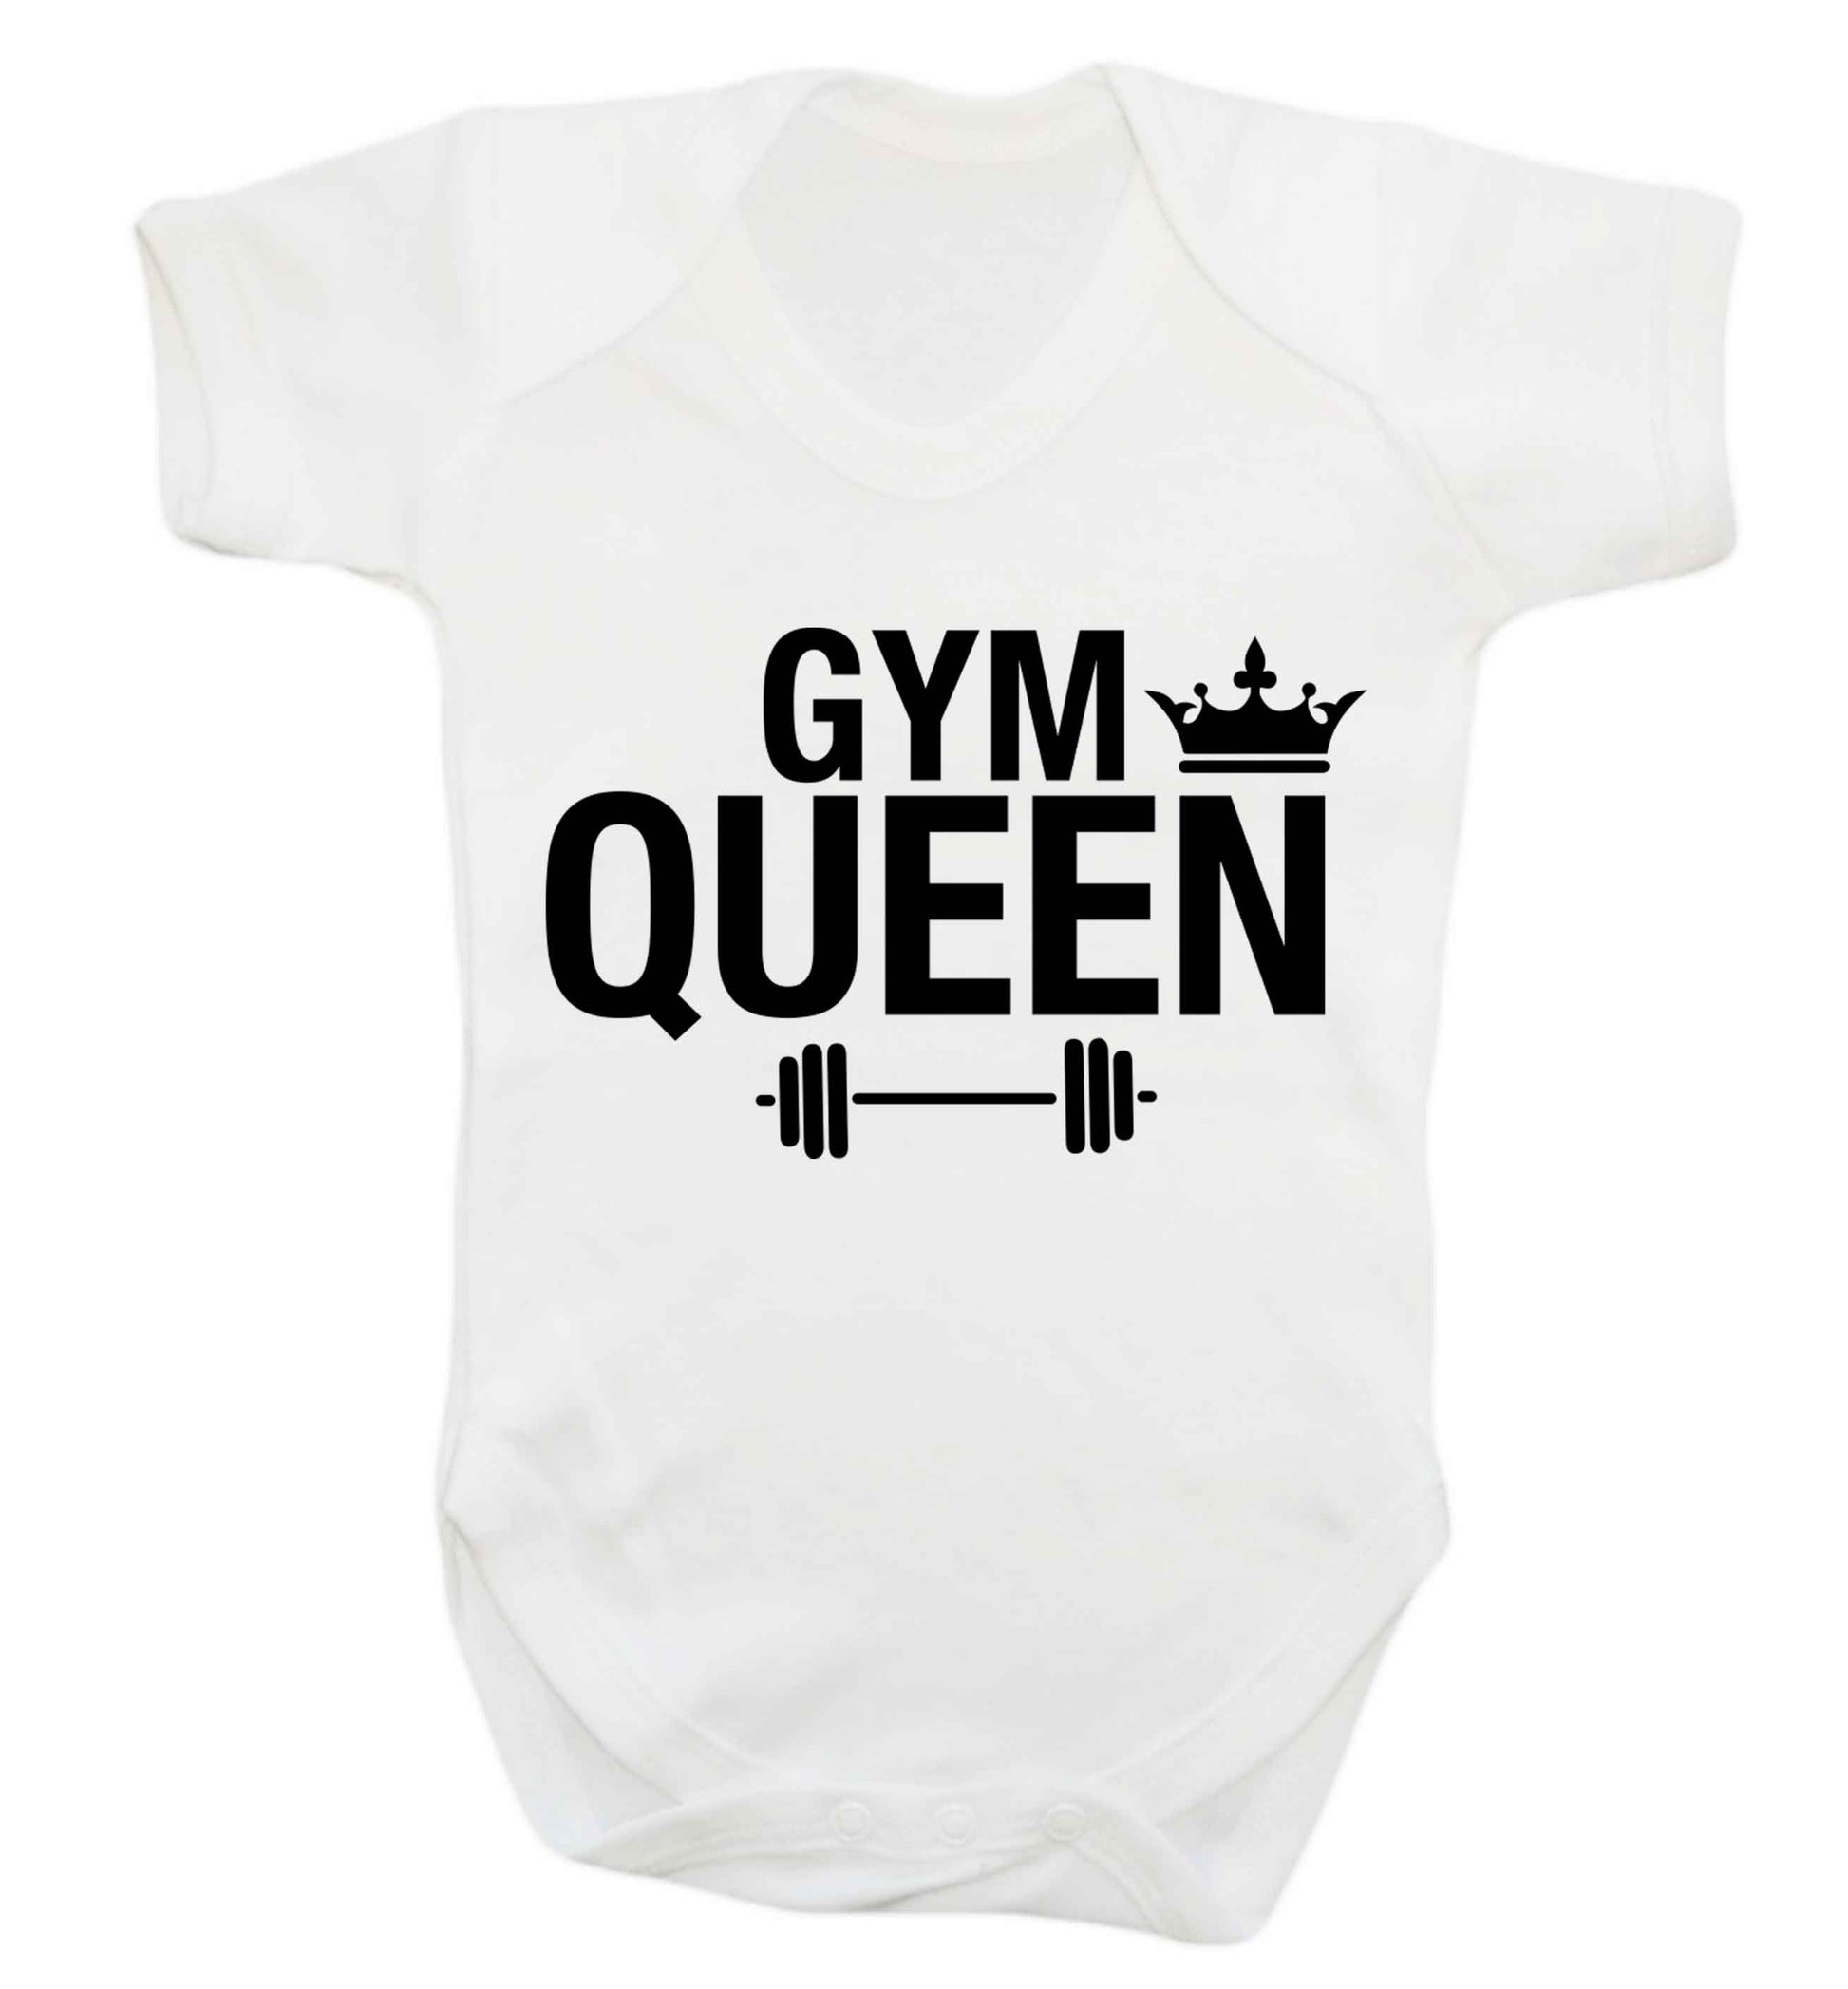 Gym queen Baby Vest white 18-24 months